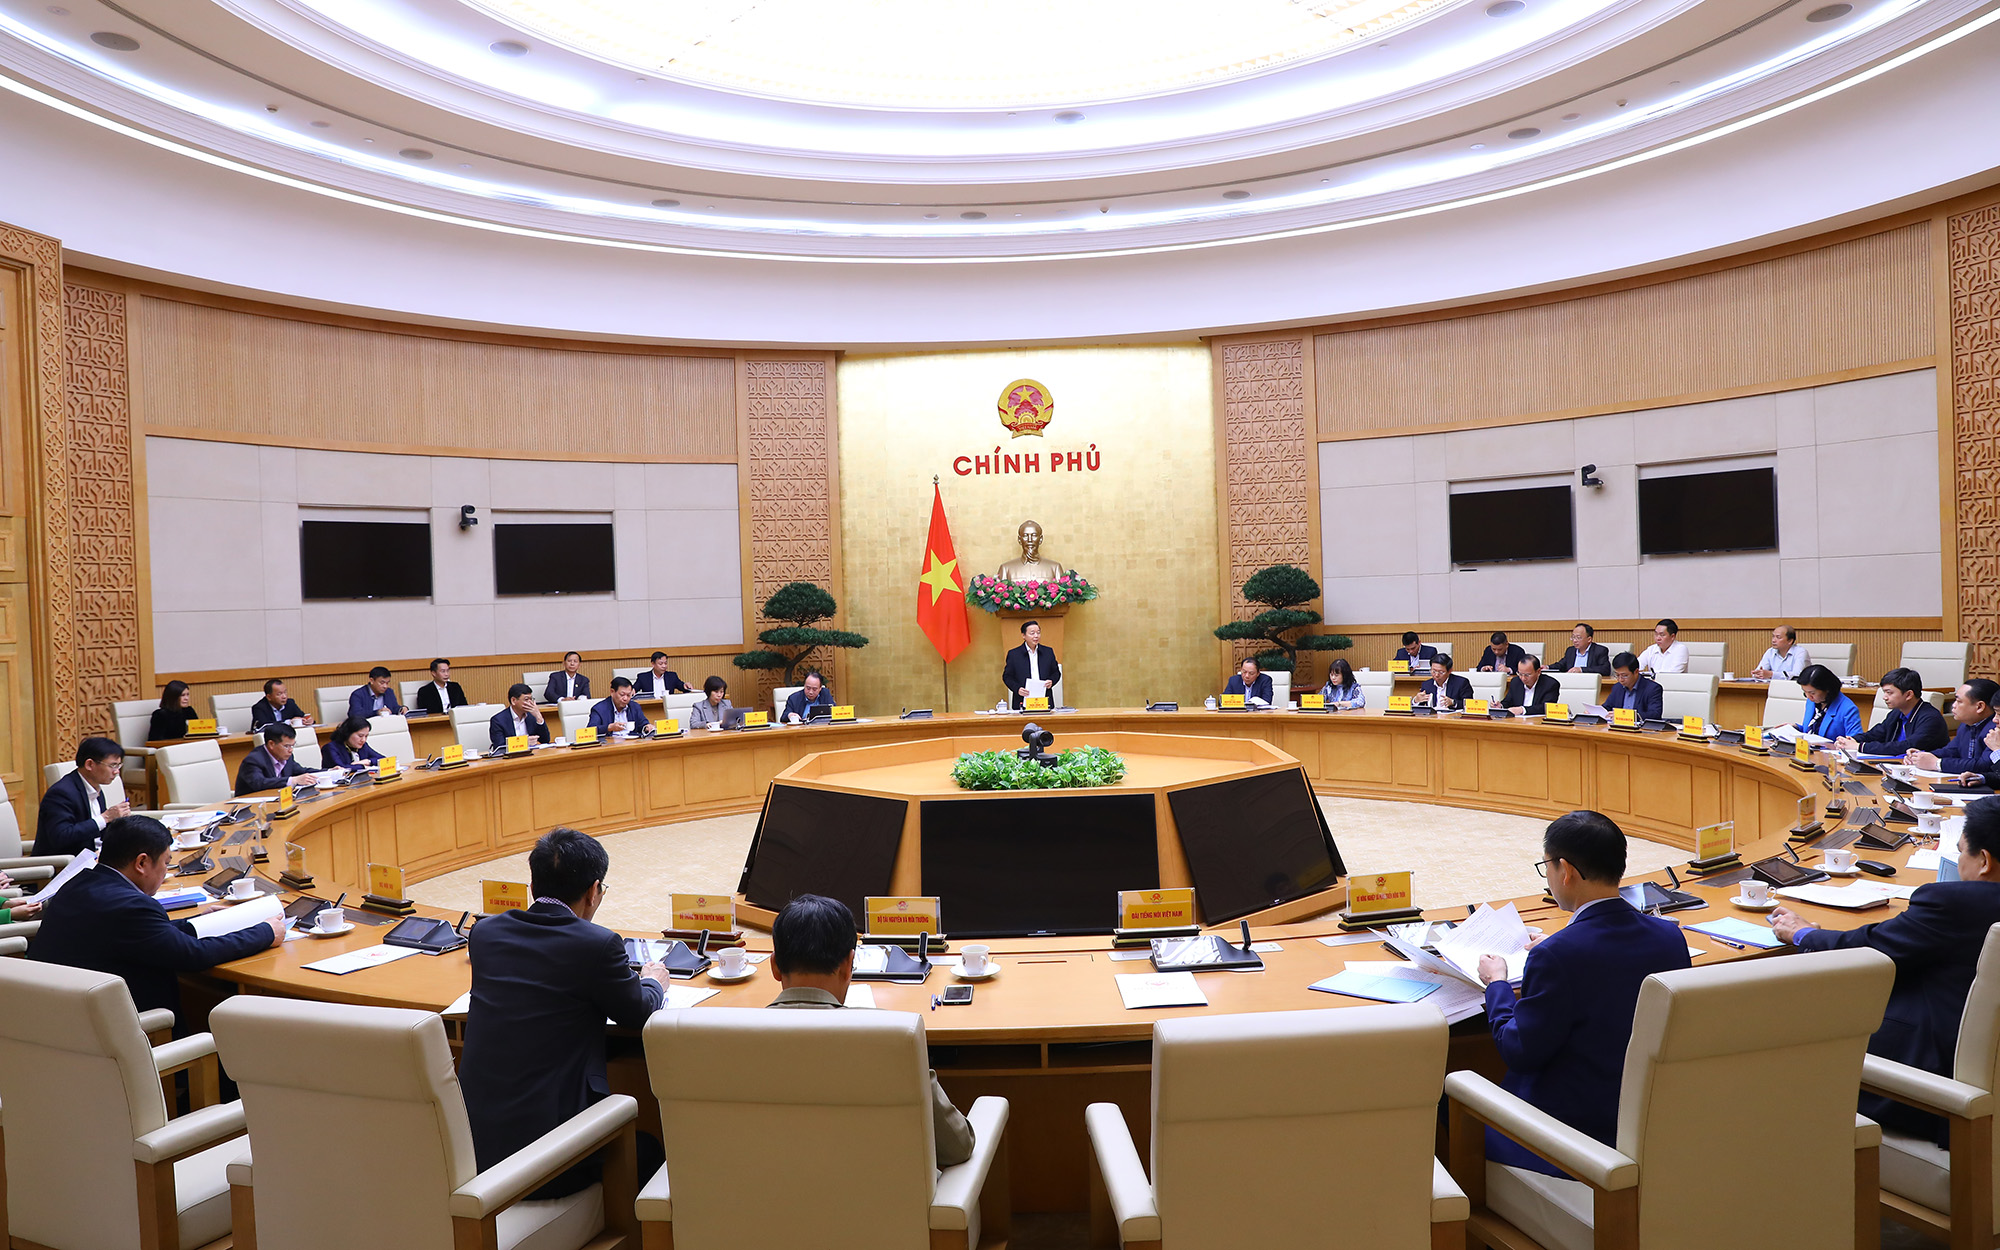 Phó Thủ tướng Trần Hồng Hà nhấn mạnh tầm quan trọng của cơ chế, chính sách tạo điều kiện cho người dân, đối tượng của từng phong trào văn hoá có thể chủ động tham gia - Ảnh: VGP/MK